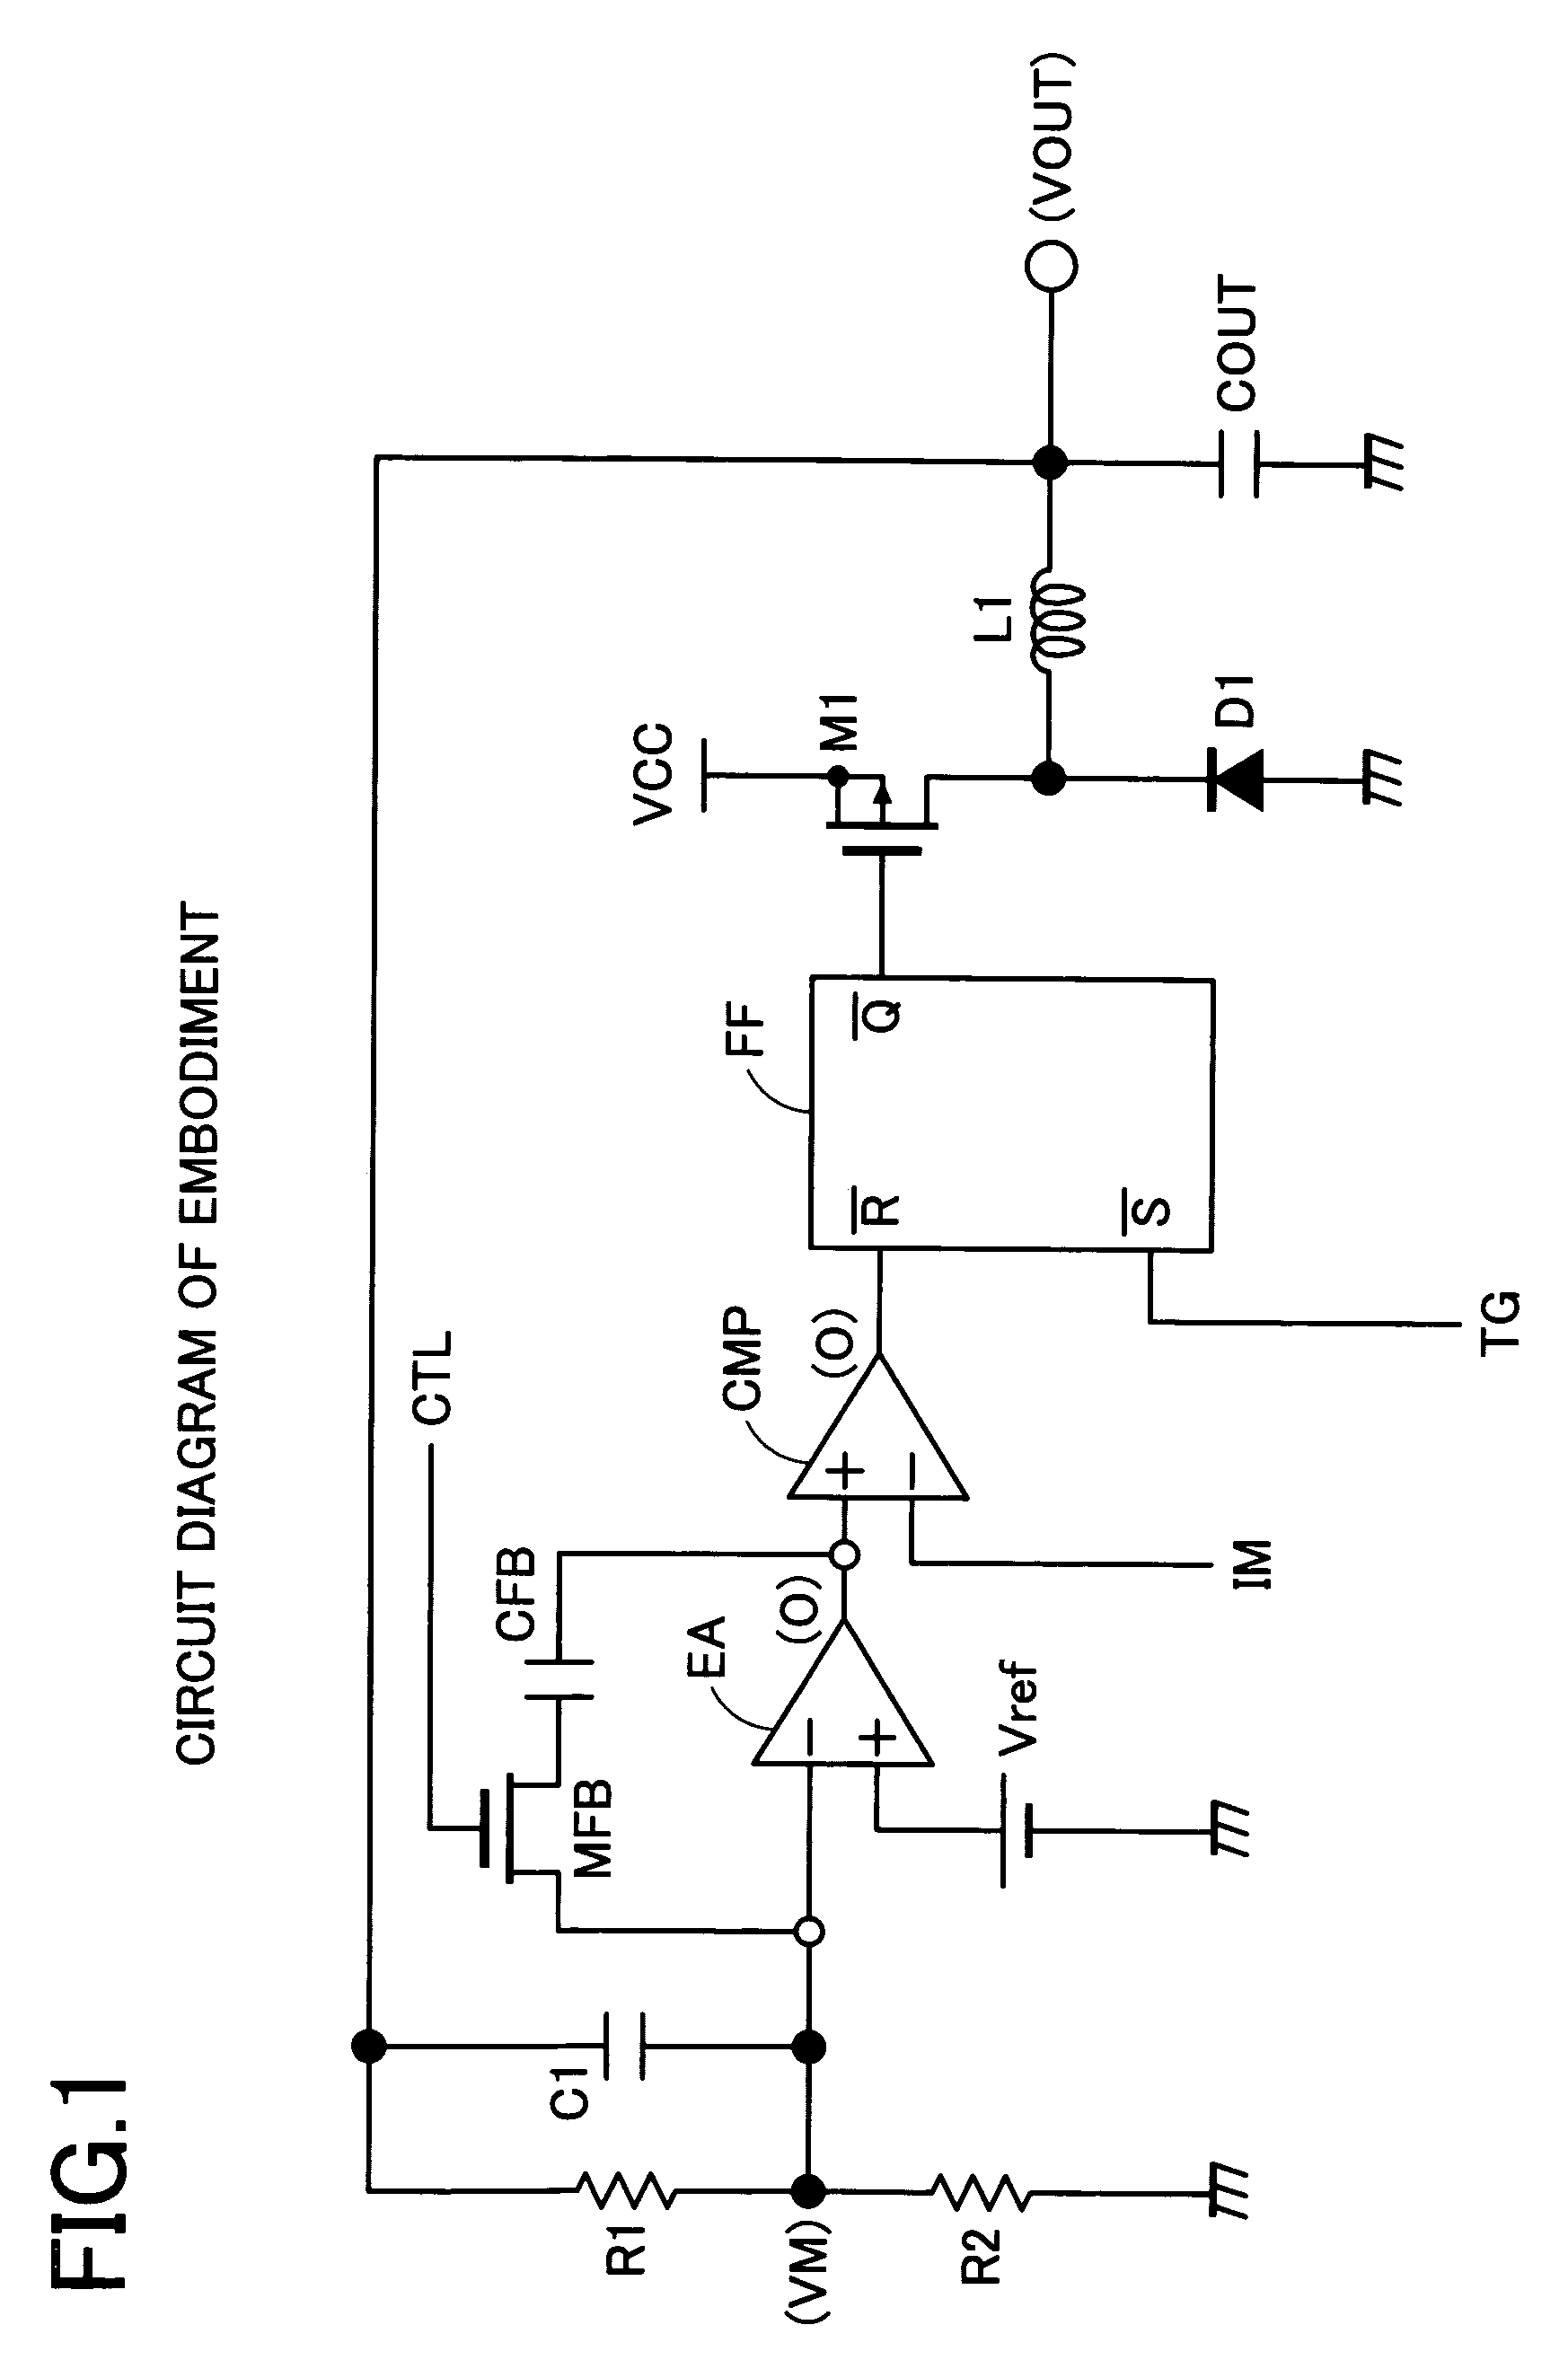 Switching regulator control circuit, switching regulator and switching regulator control method